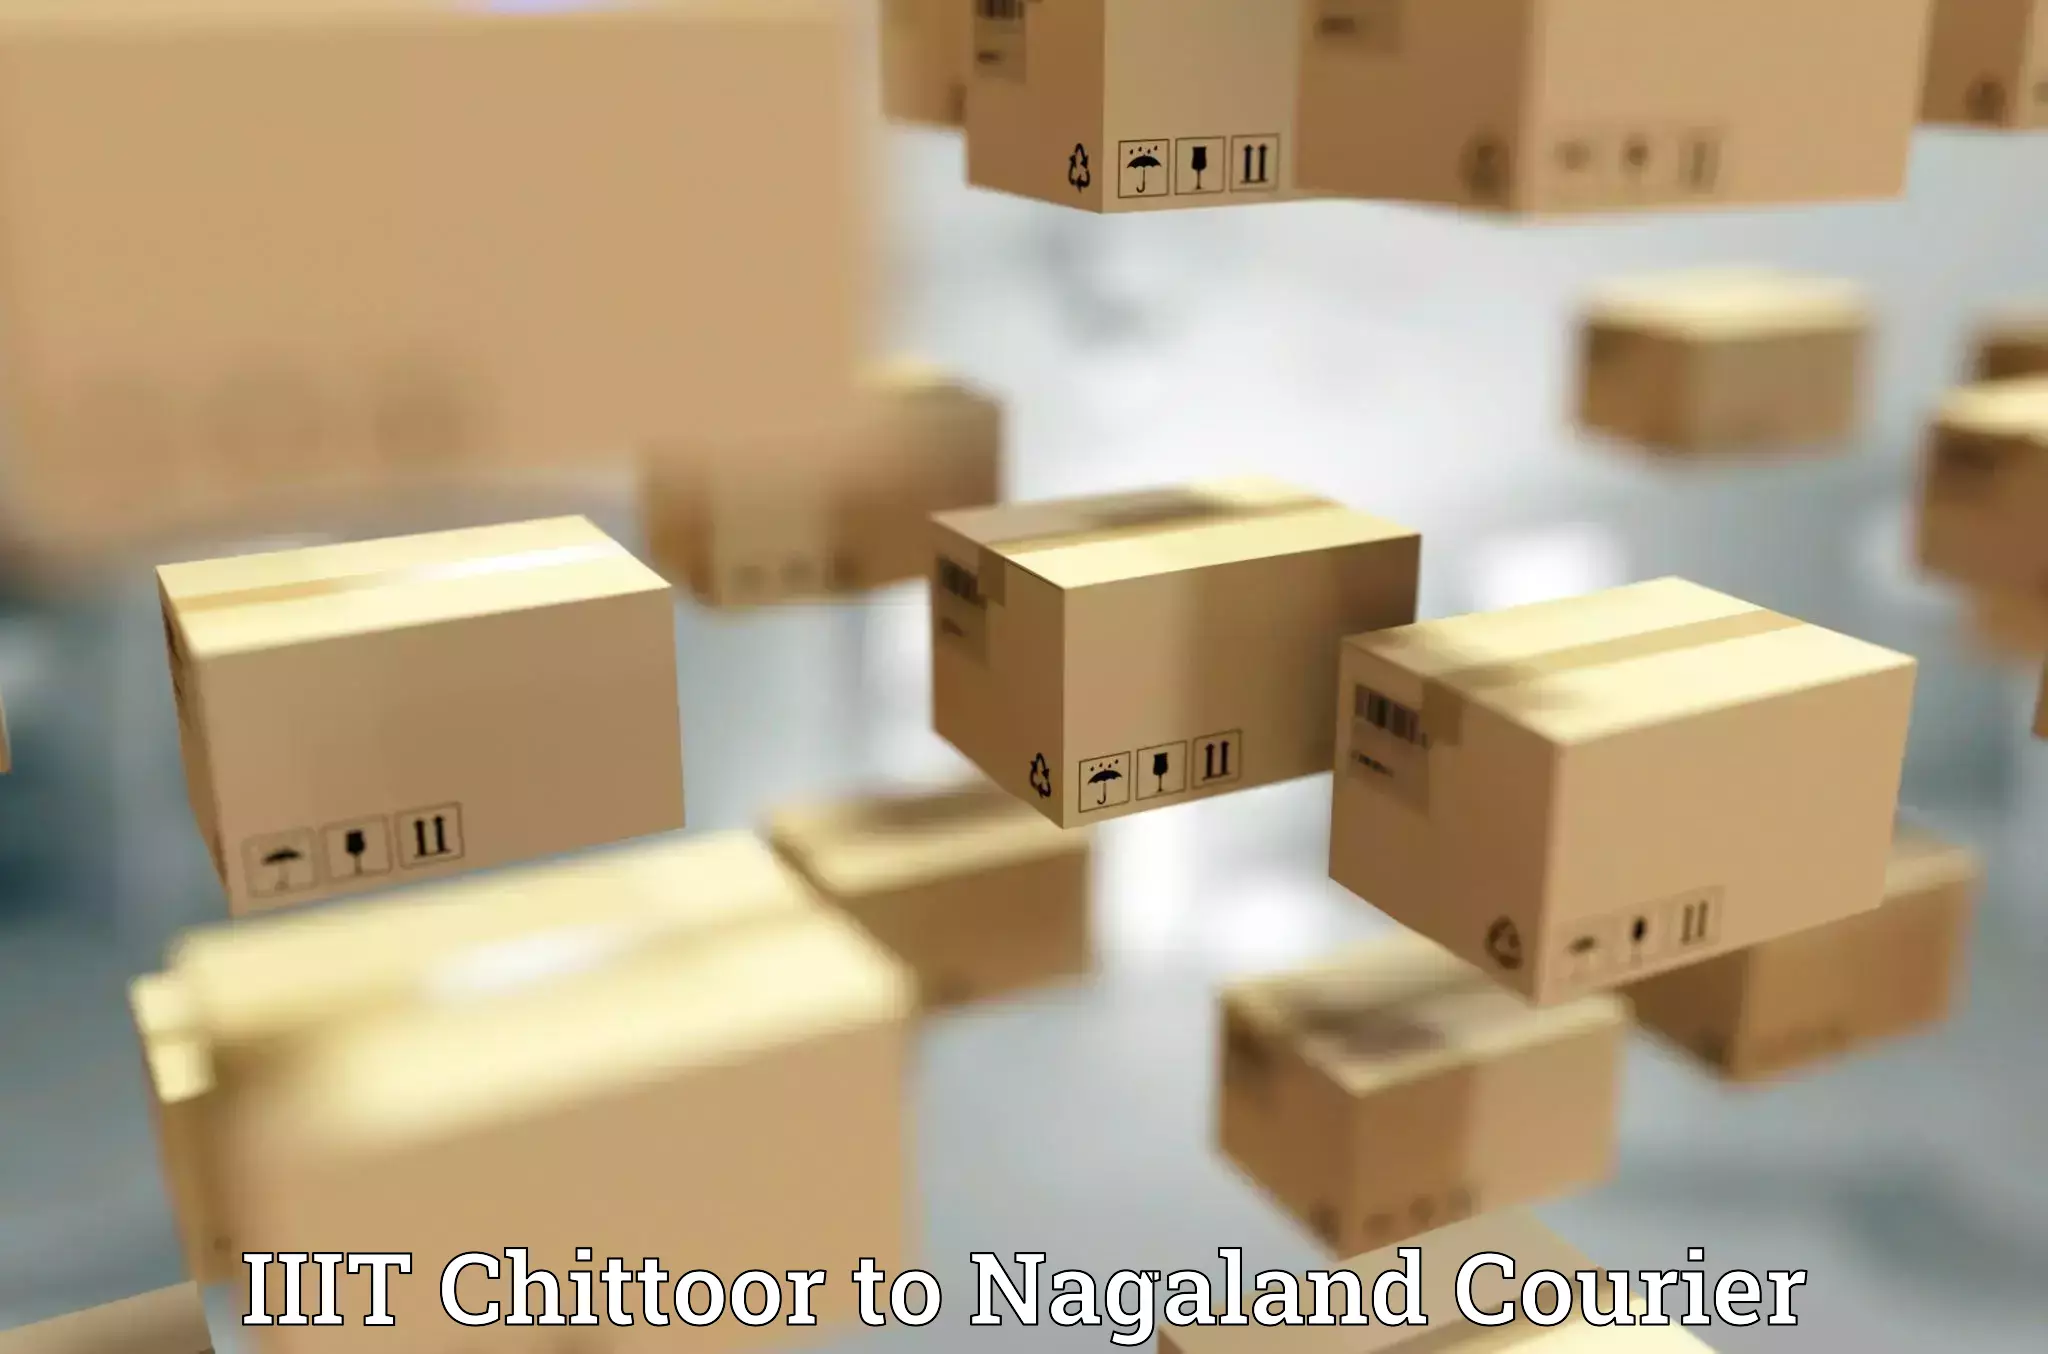 Express courier facilities in IIIT Chittoor to Peren